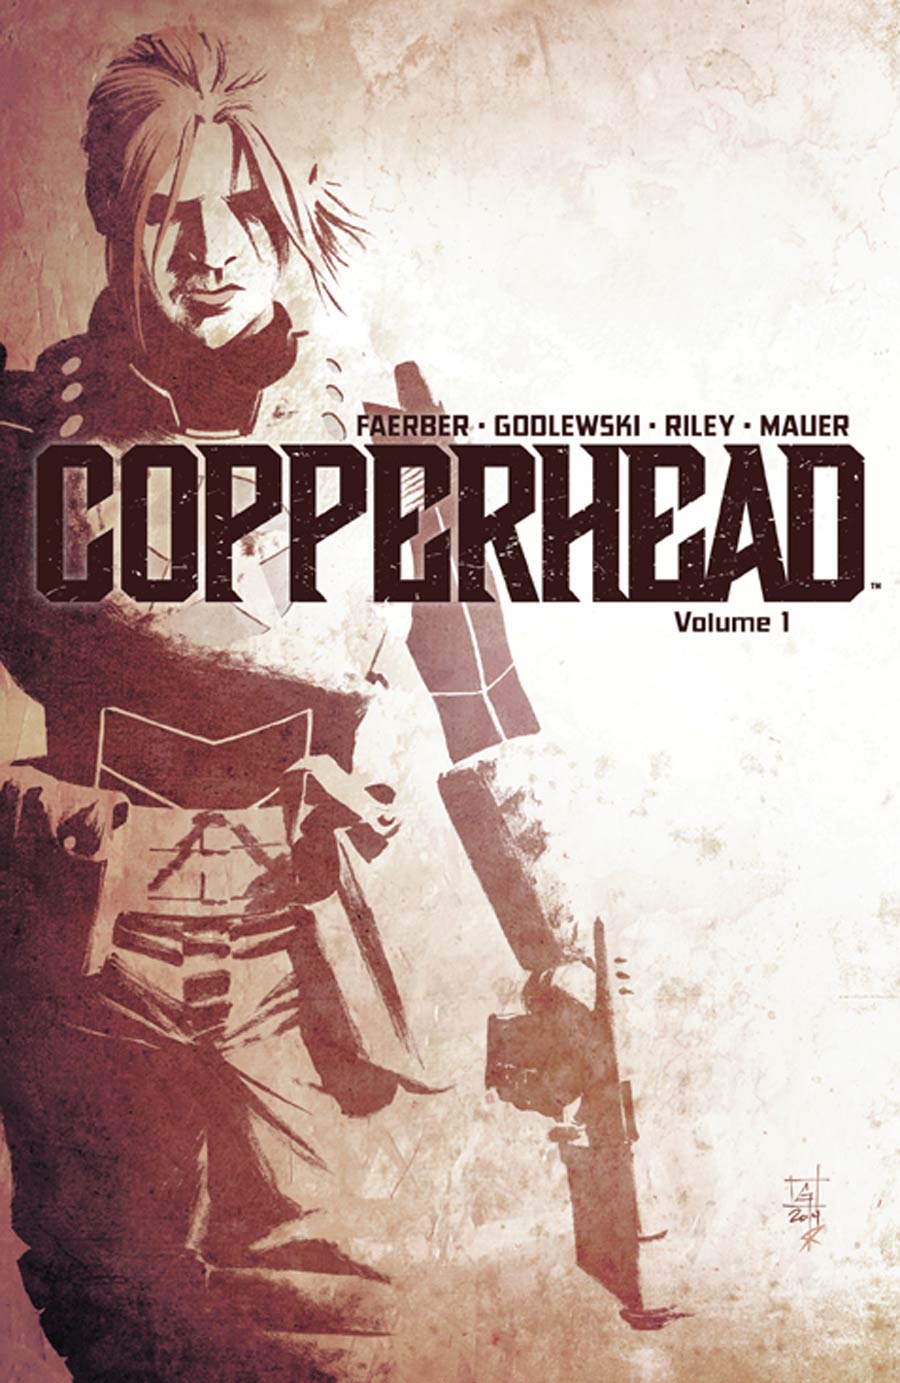 Copperhead Vol 1 TP